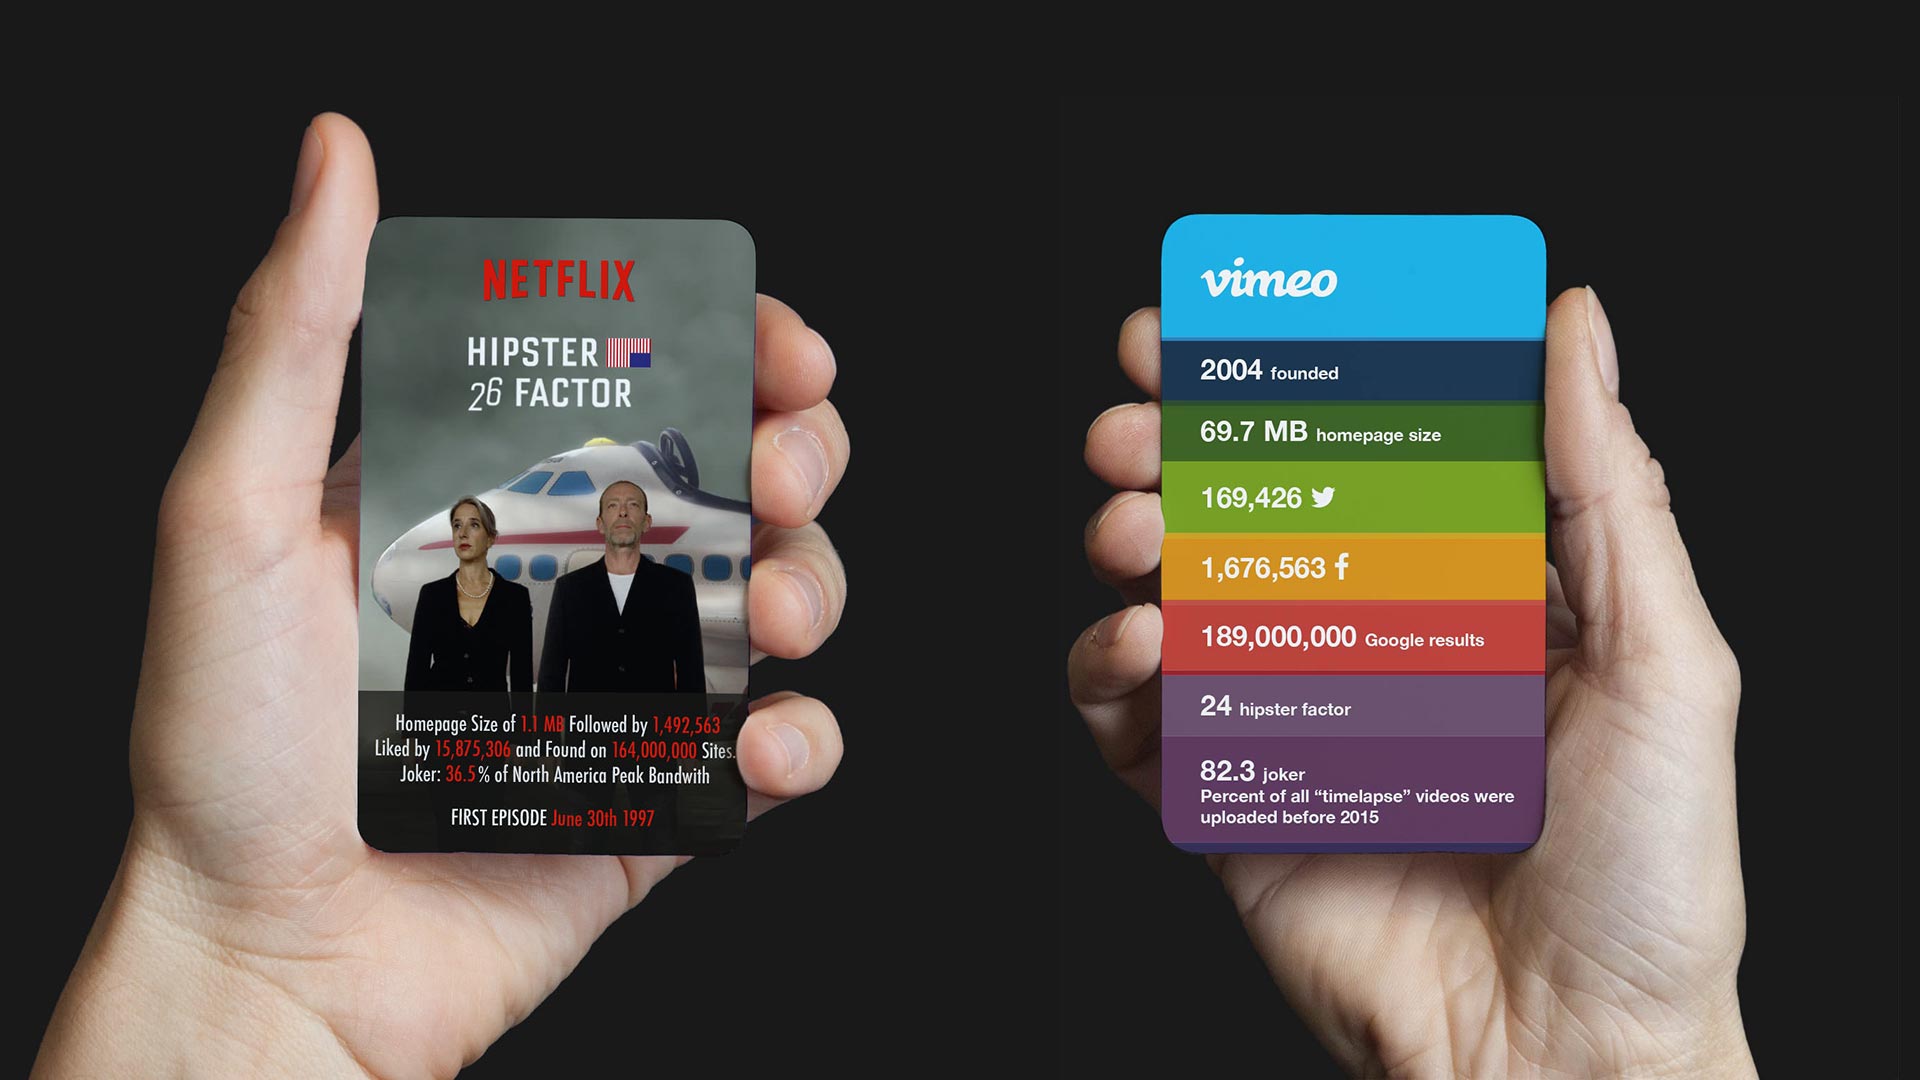 MJOM Cards Web Trumps: Netflix vs. Vimeo